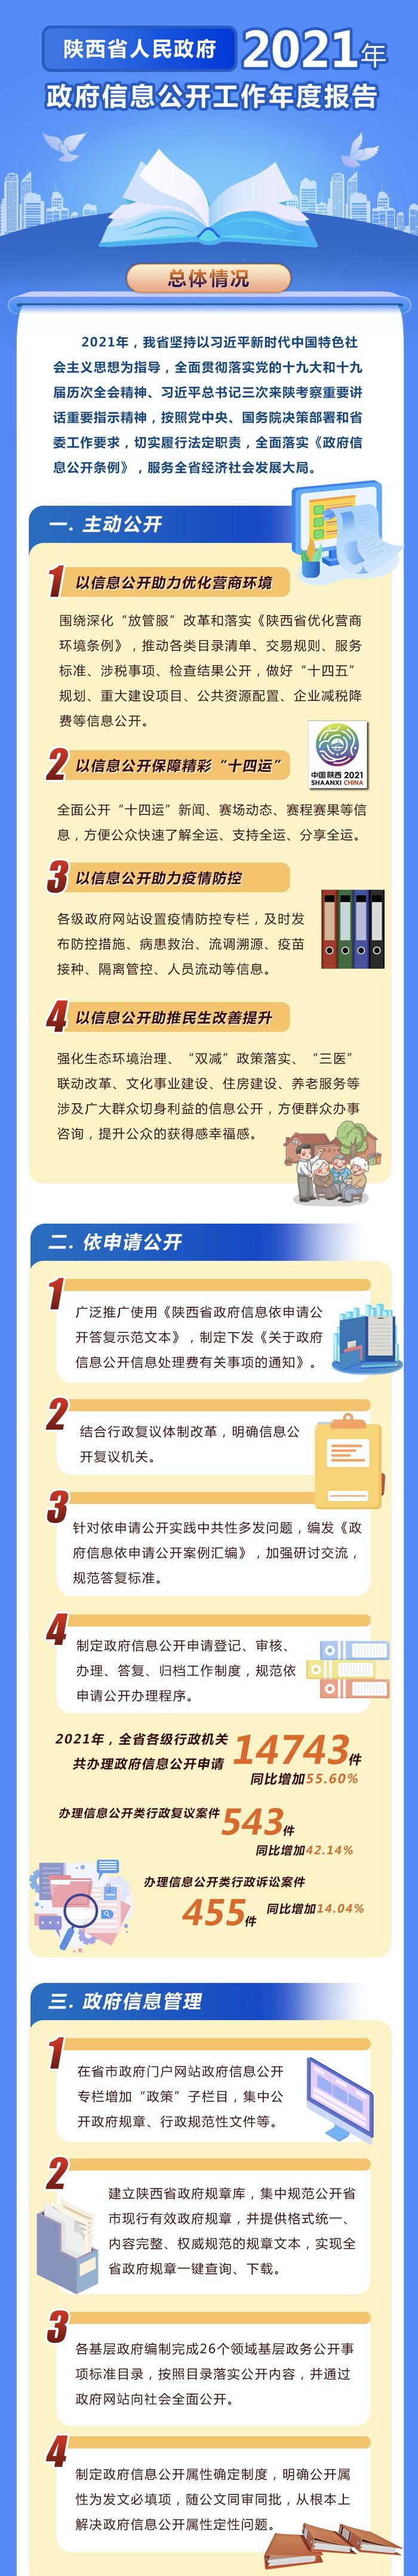 陕西省人民政府2021年政府信息公开工作年度报告